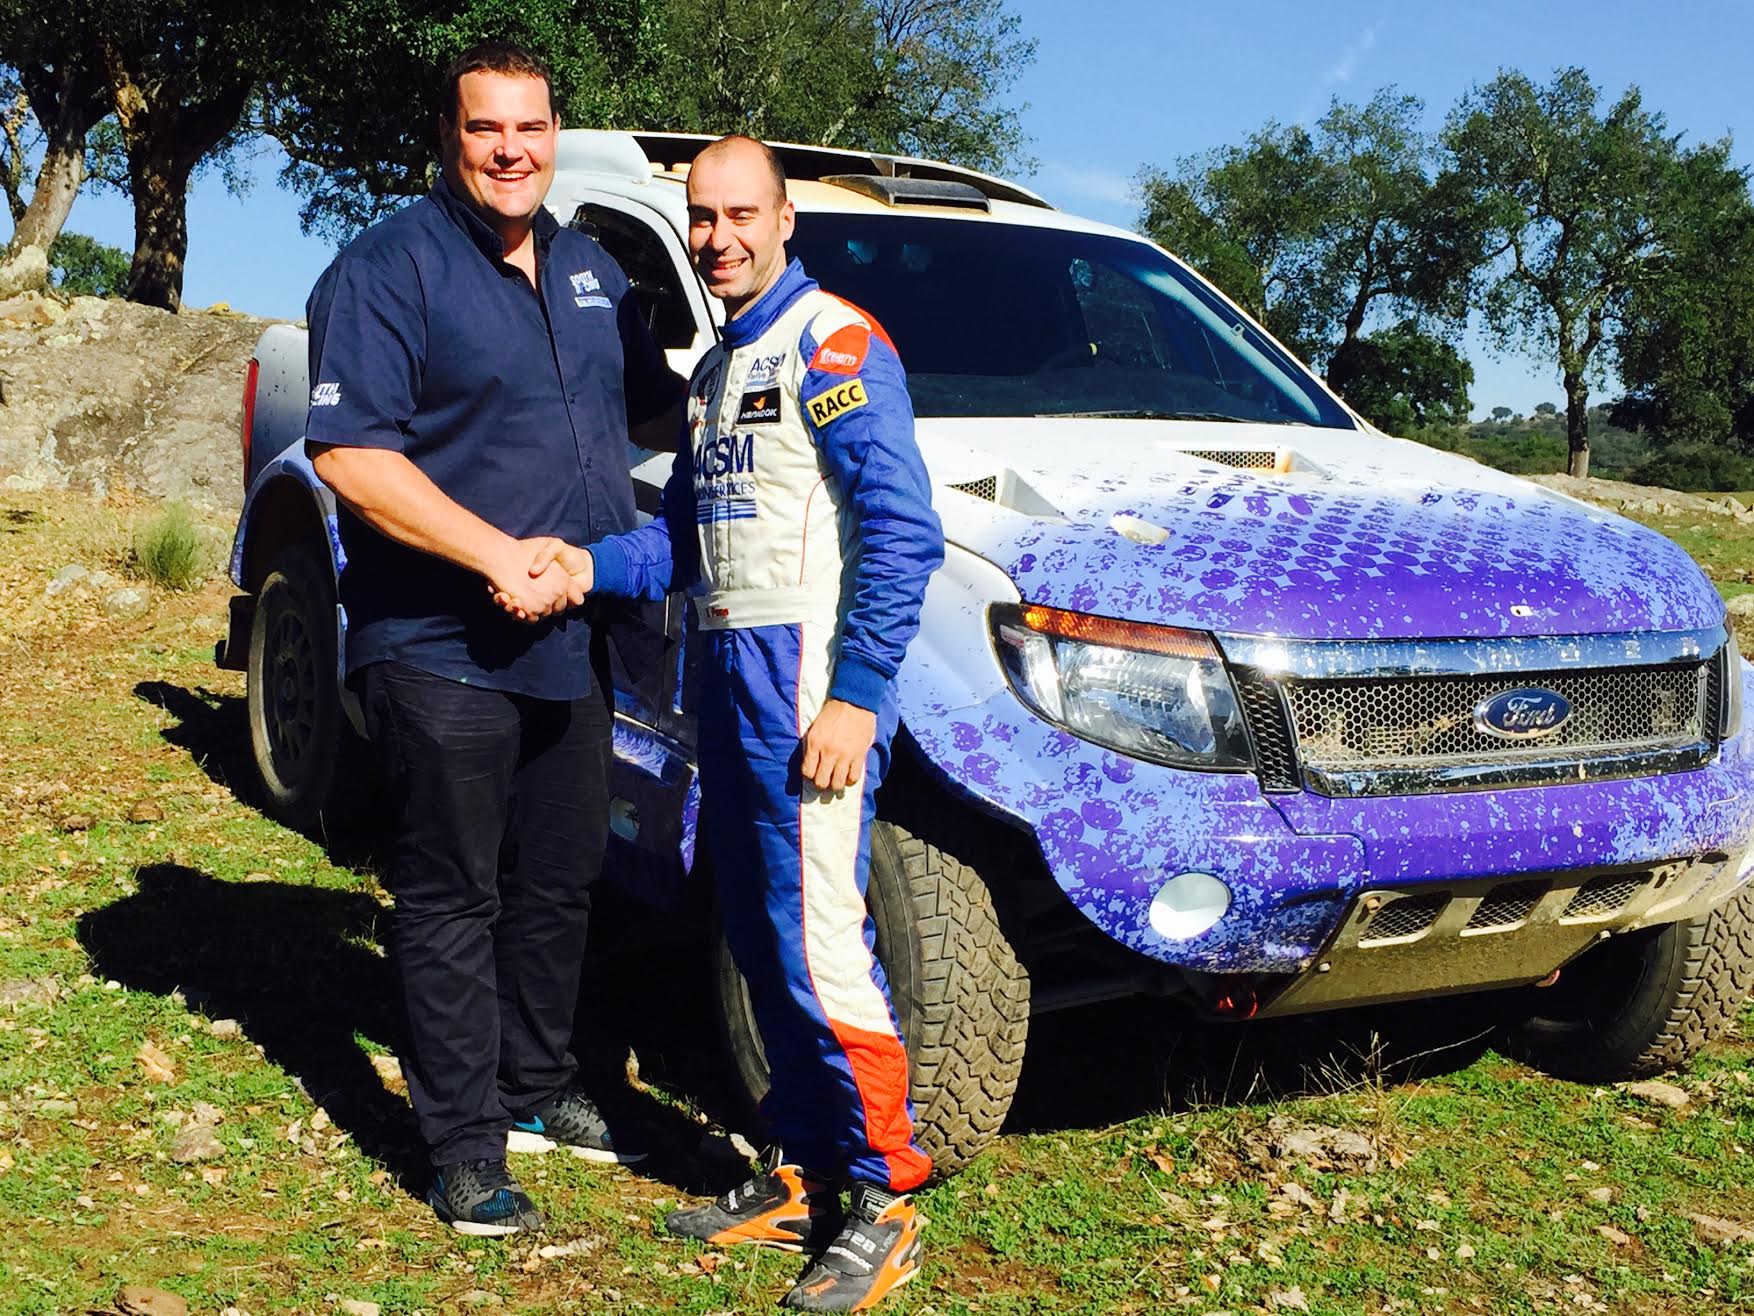 Für das Team DMAS South Racing aus Frankfurt wird Xavier Pons an der Dakar 2016 teilnehmen. Der 35-jährige Spanier fuhr bisher in der FIA-World Rally Championship-Rennserie. Er wird einen Ford Ranger steuern, sein Navigator ist der Argentinier  Ricardo Torlashi.